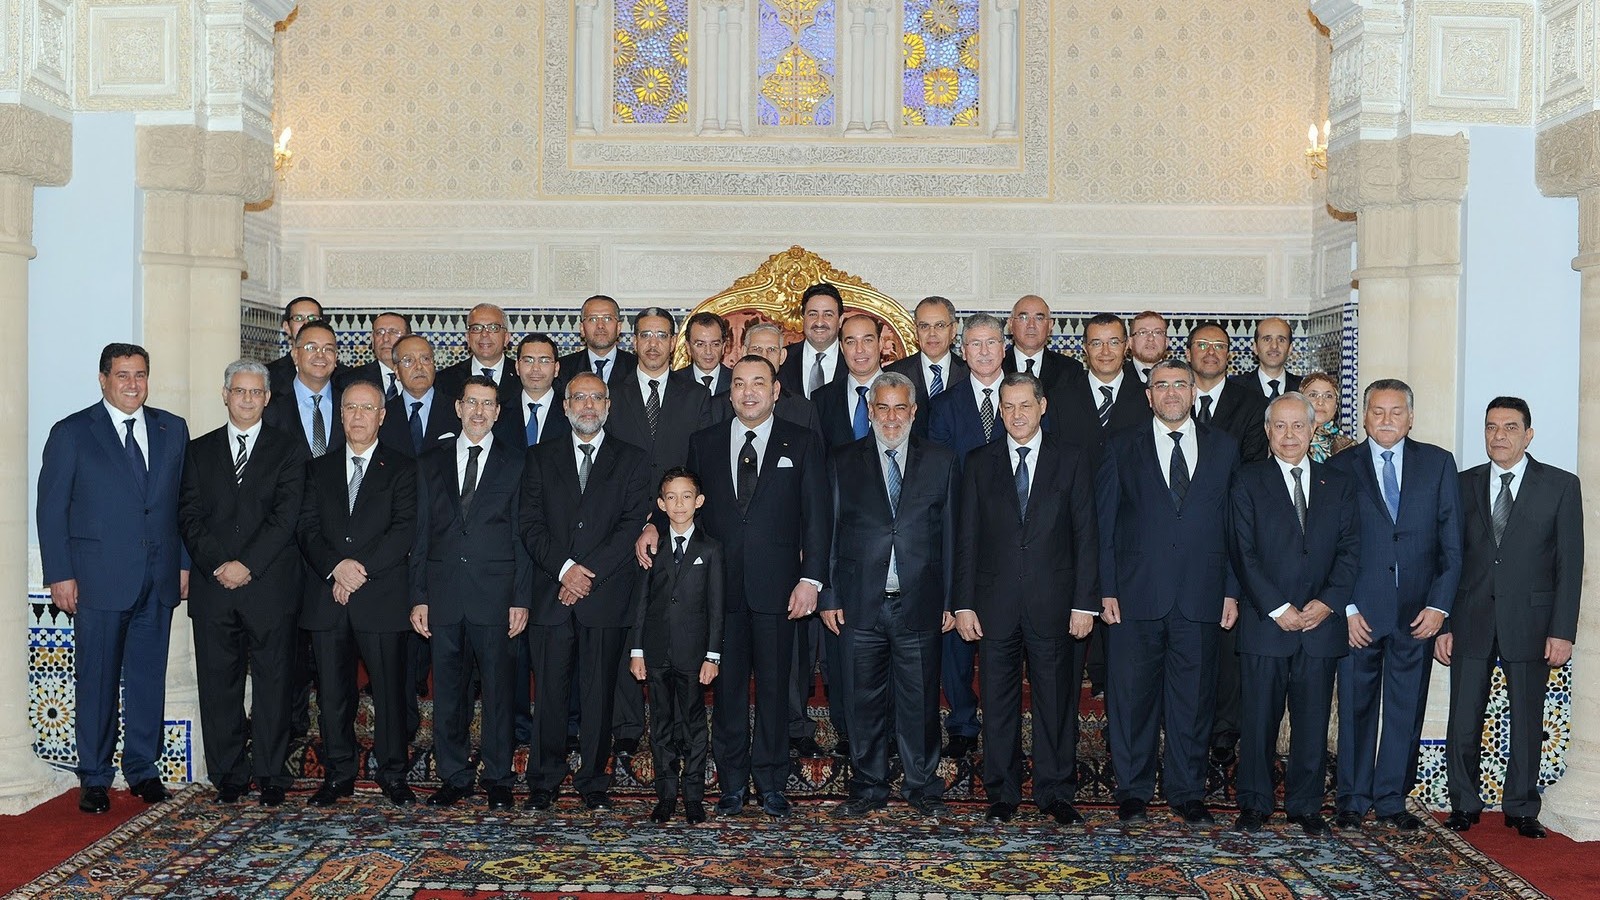 Lors de la réception, le 3 janvier 2012, du 1er gouvernement Benkirane, le 30e gouvernement marocain.
